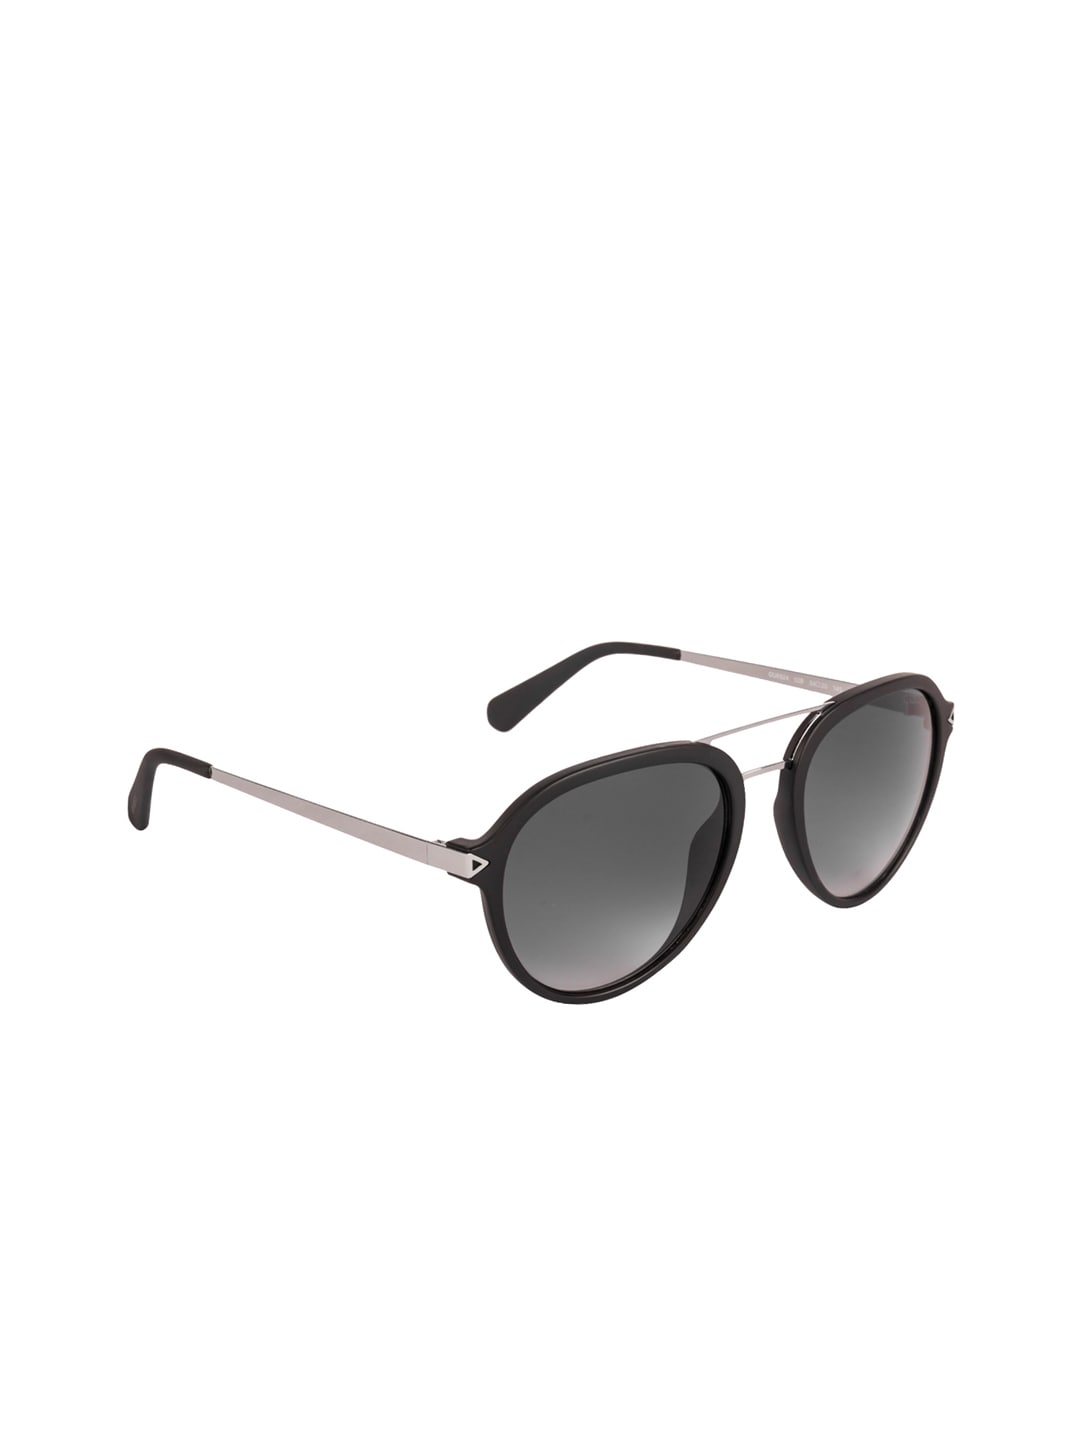 GUESS Women Oval Sunglasses GU6924 54 02B Price in India